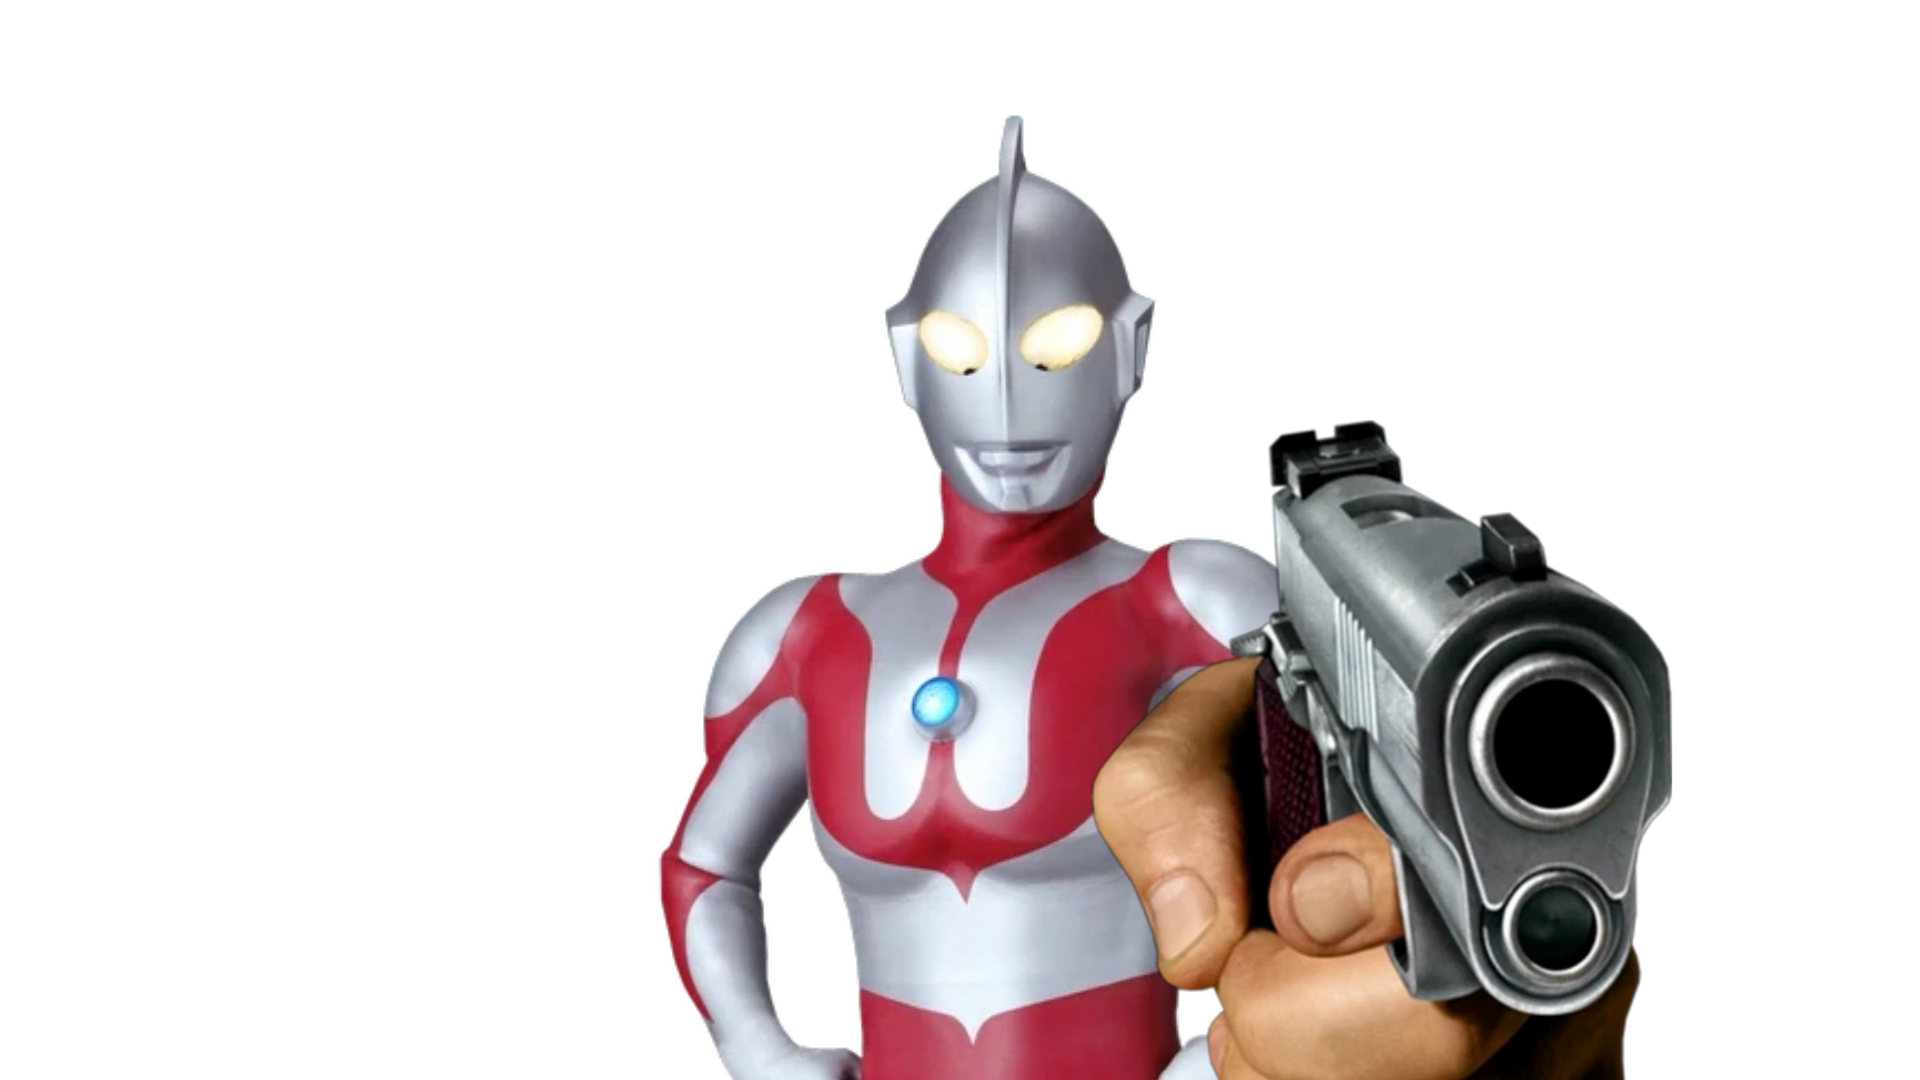 Ultraman holding a gun Blank Meme Template